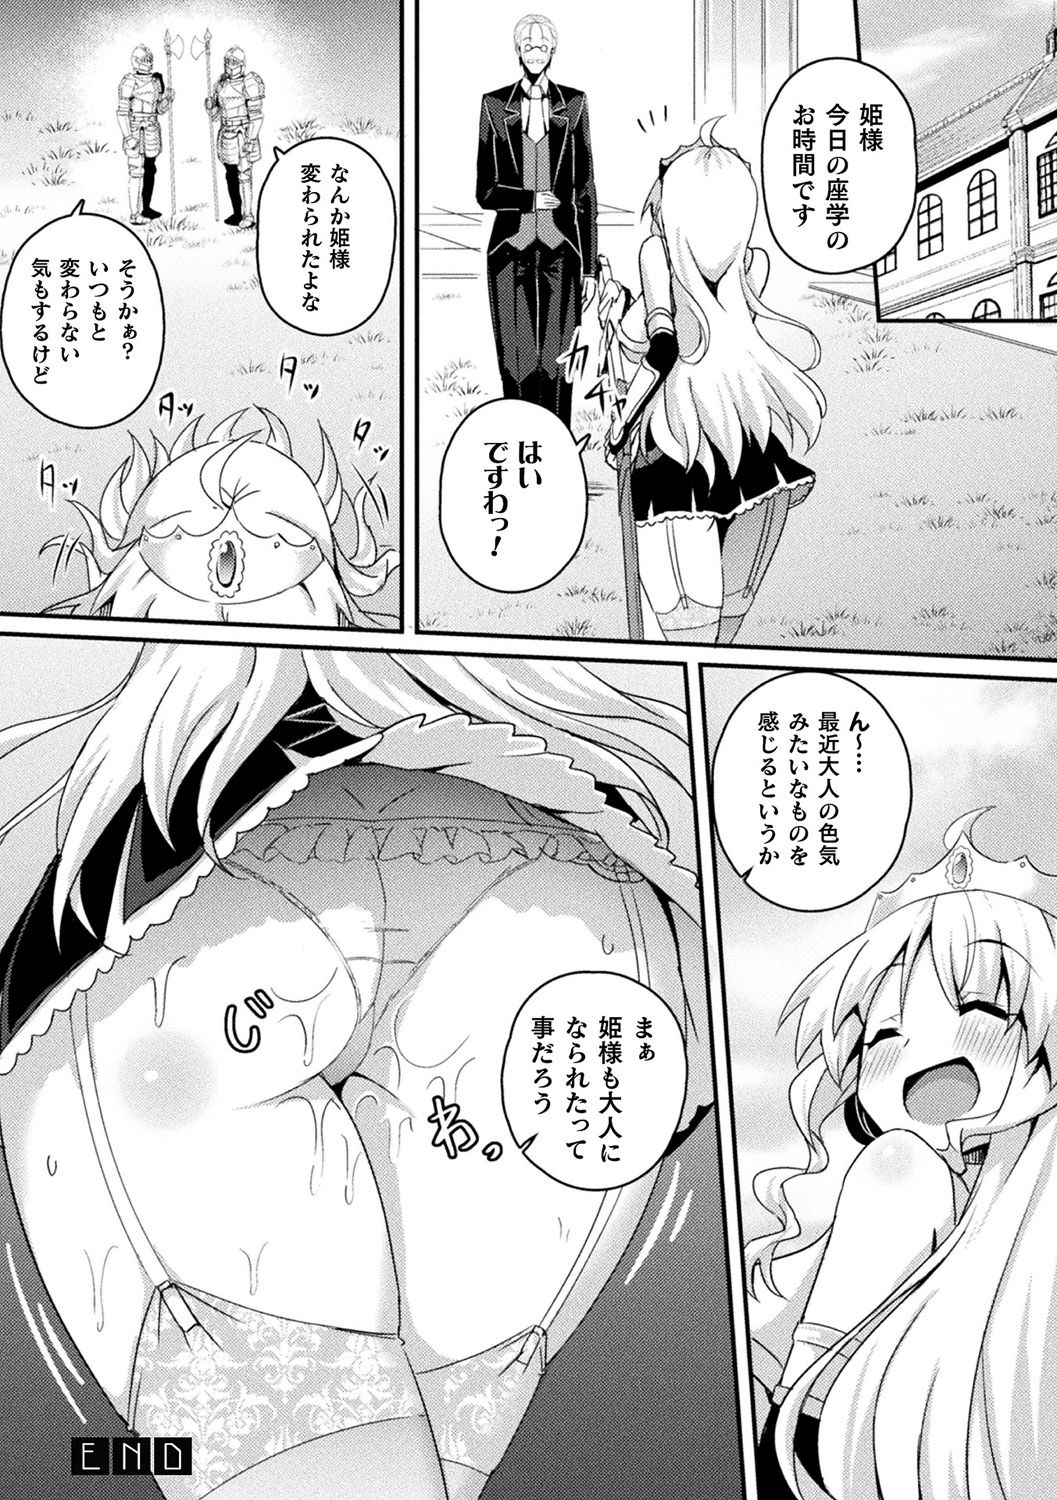 [Anthology] Bessatsu Comic Unreal Ponkotsu Fantasy Heroine H ~Doji o Funde Gyakuten Saretari Ero Trap ni Hamattari!?~ Vol. 2 [Digital] page 23 full